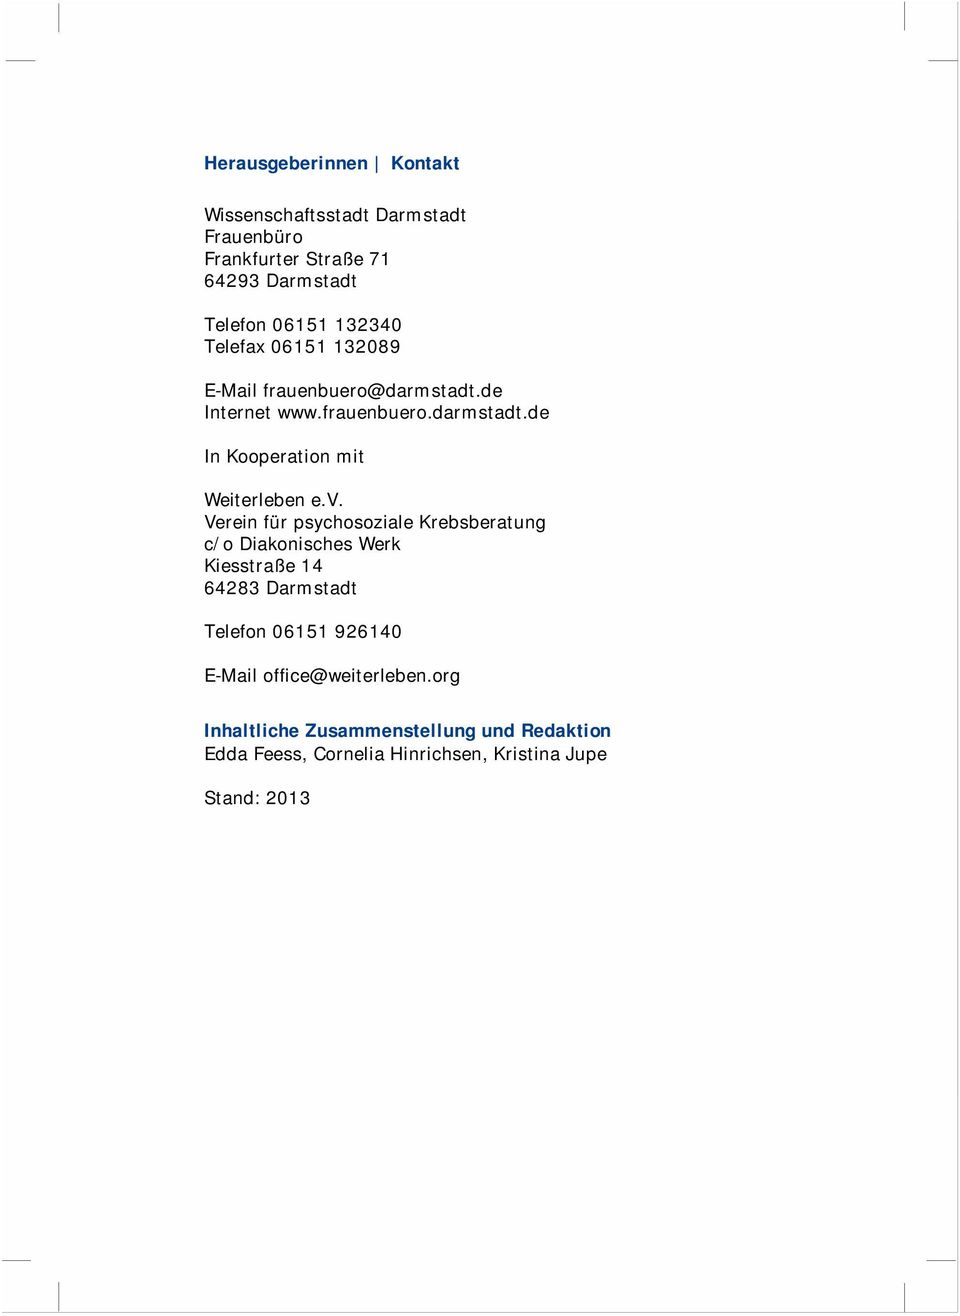 v. Verein für psychosoziale Krebsberatung c/o Diakonisches Werk Kiesstraße 14 64283 Darmstadt Telefon 06151 926140 E-Mail